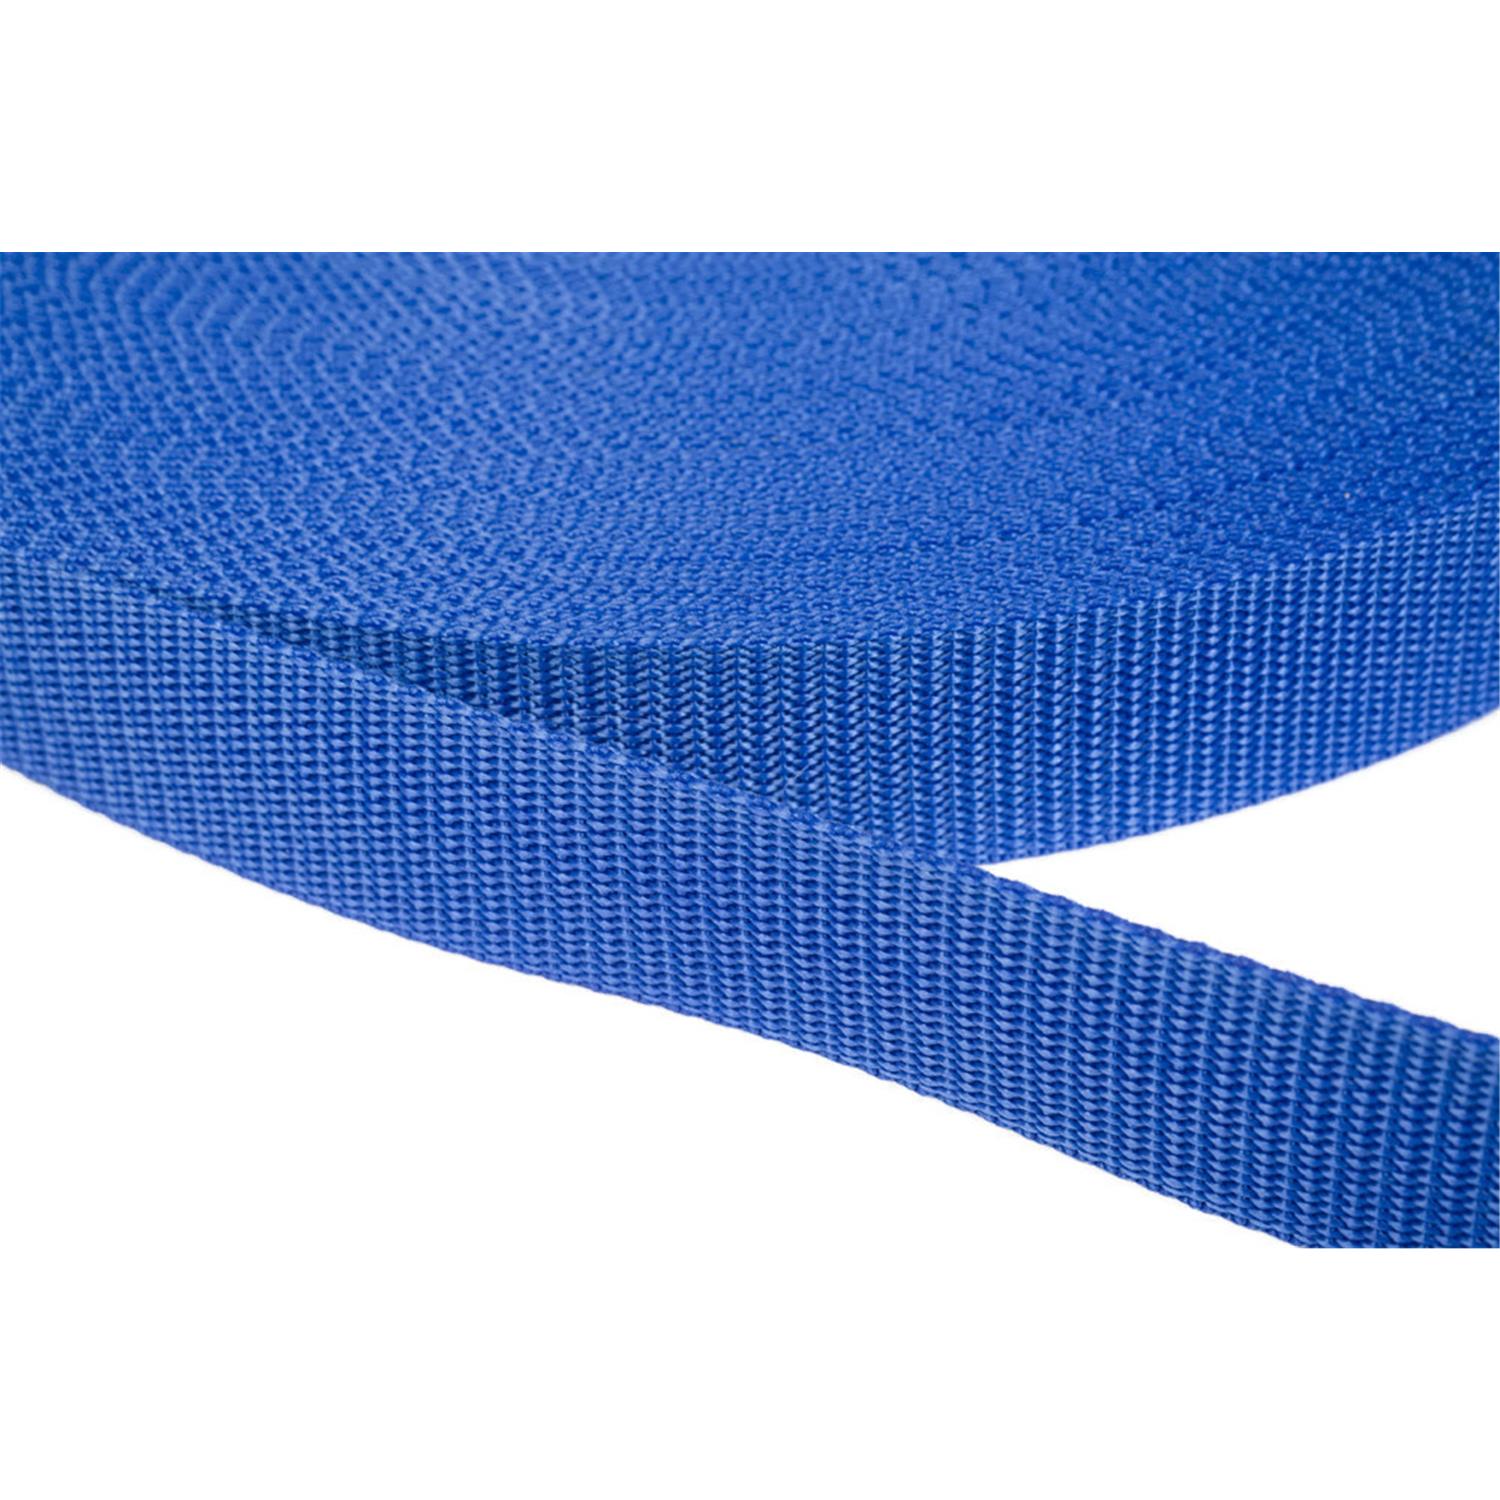 Gurtband 25mm breit aus Polypropylen in 41 Farben 26 - royalblau 6 Meter